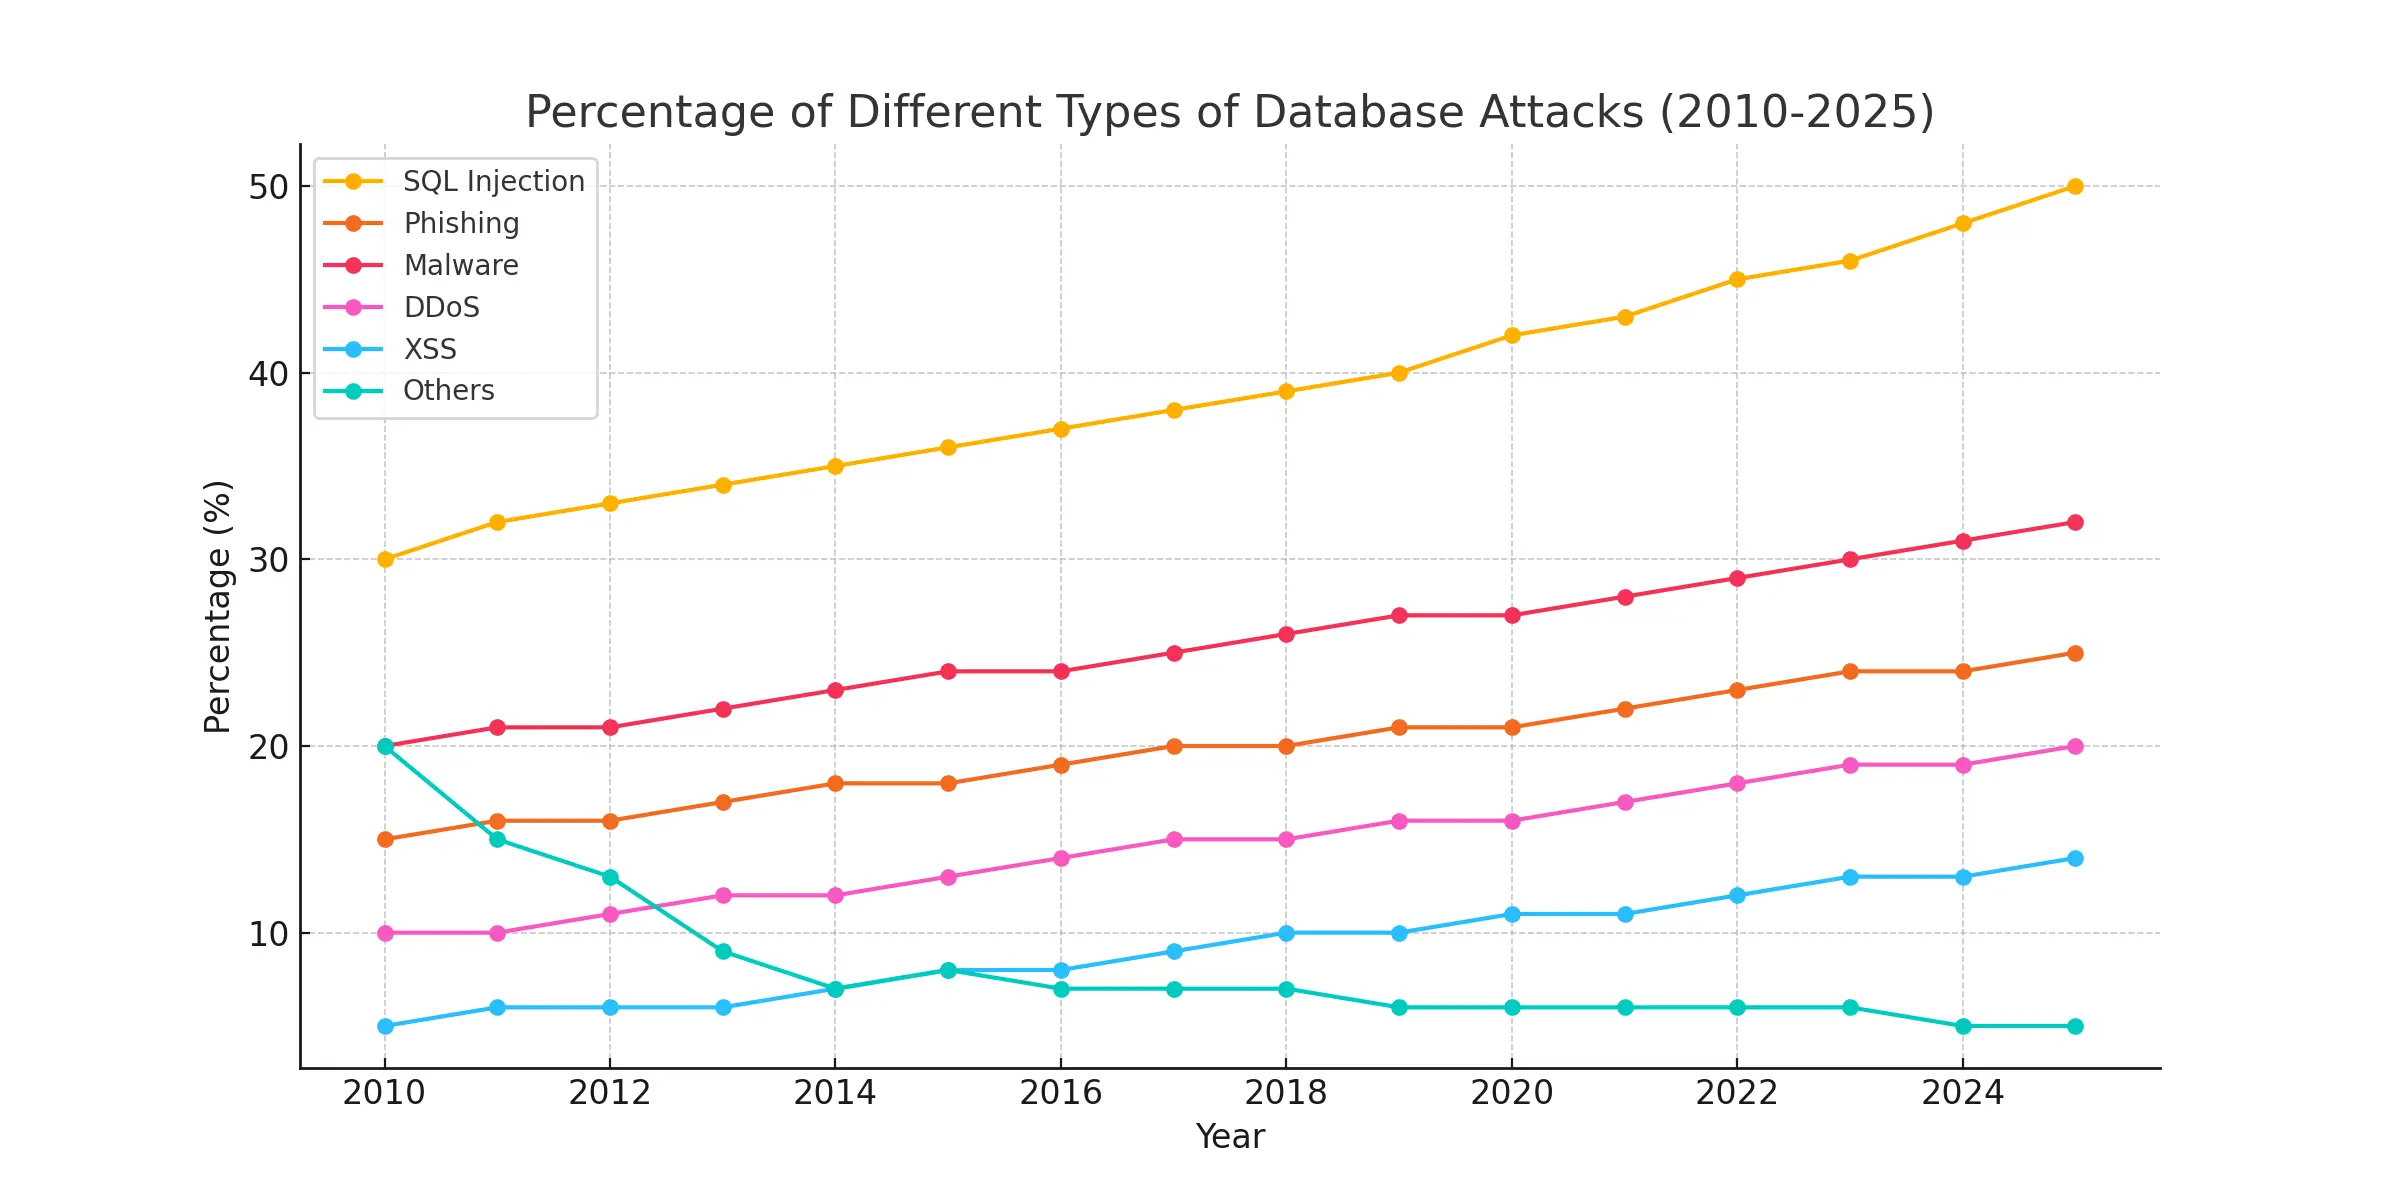 رسم بياني يوضح النسبة المئوية لأنواع الهجمات على قواعد البيانات من 2010 إلى 2024، مع التركيز على هجمات SQL Injection.